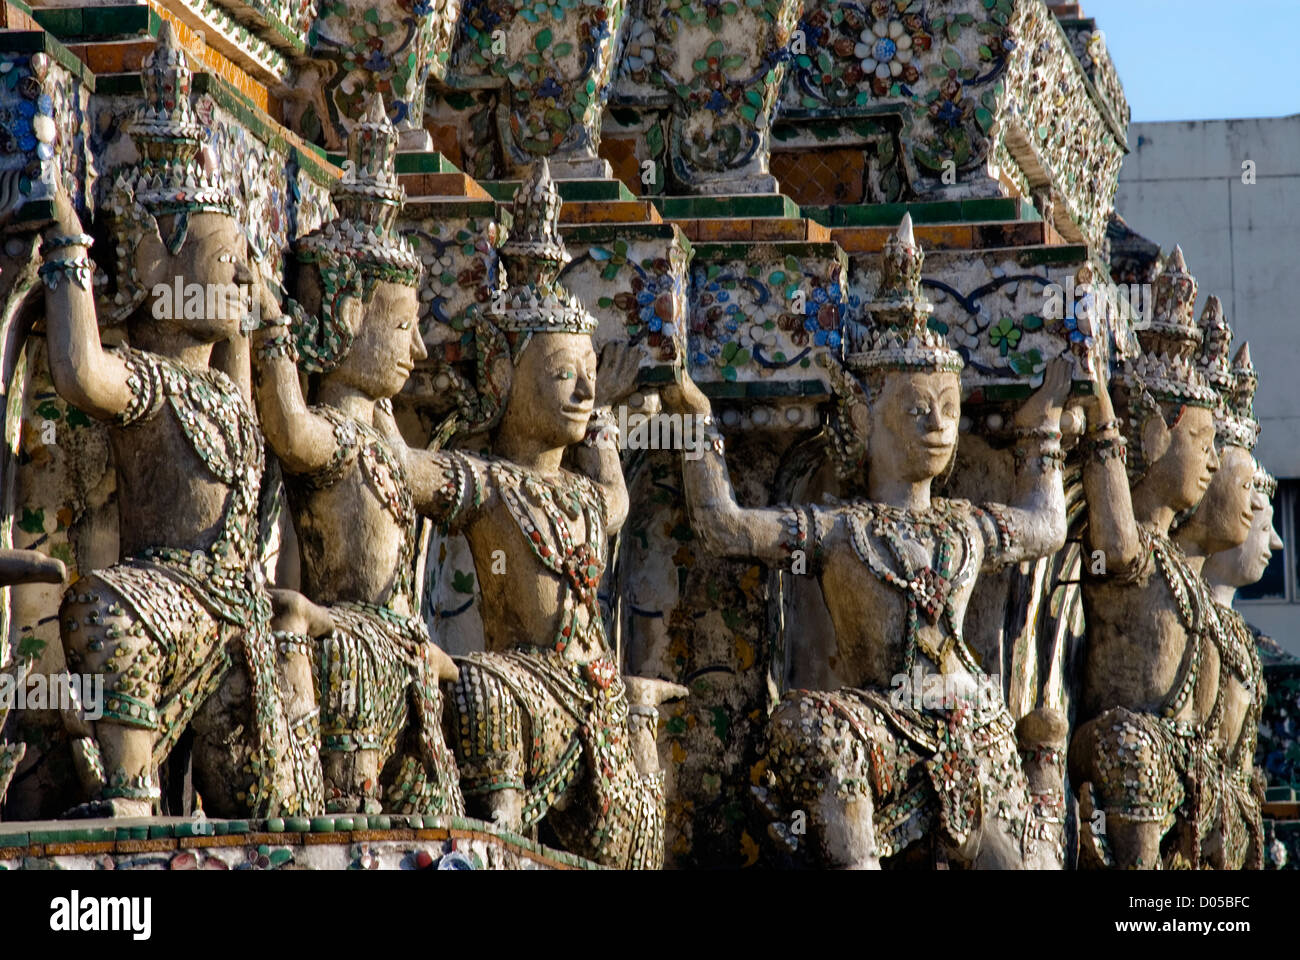 Architektonisches Detail am Prang von Wat Arun, Bangkok, Thailand | Architektur Detail bin Wat Arun, Bangkok, Thailand Stockfoto